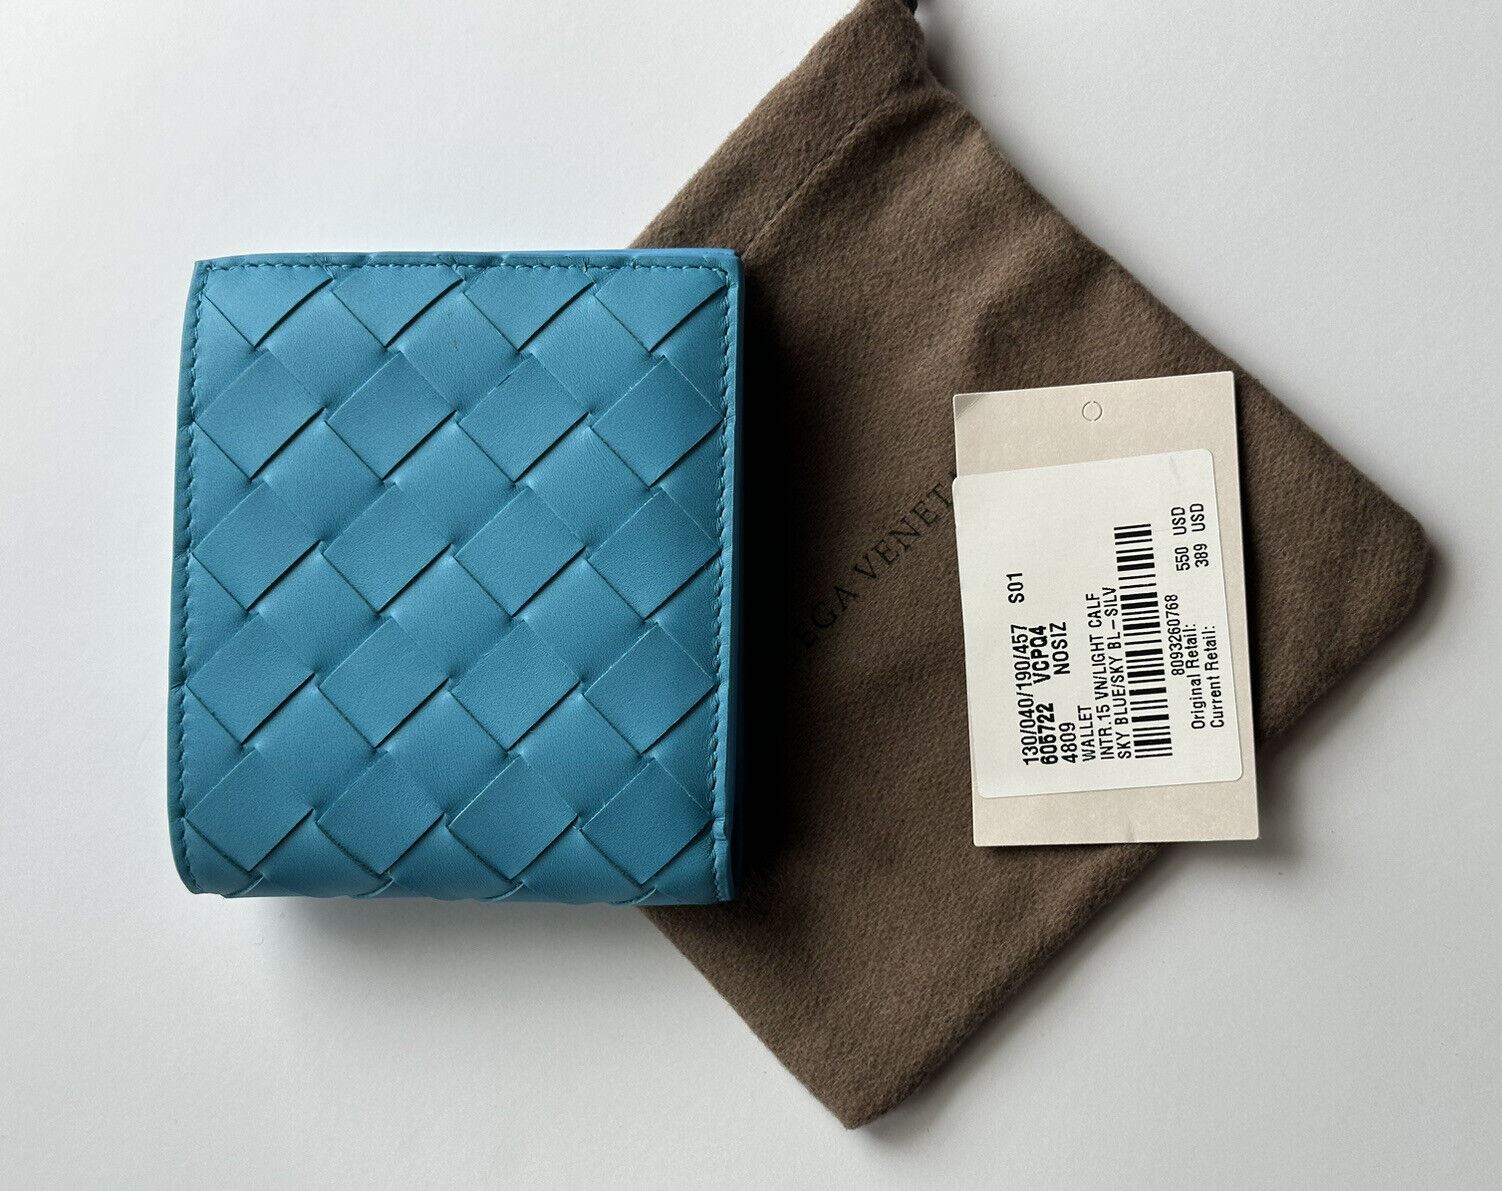 NWT $550 Bottega Veneta Intrecciato Кожаный двойной кошелек для монет небесно-голубого цвета 605722